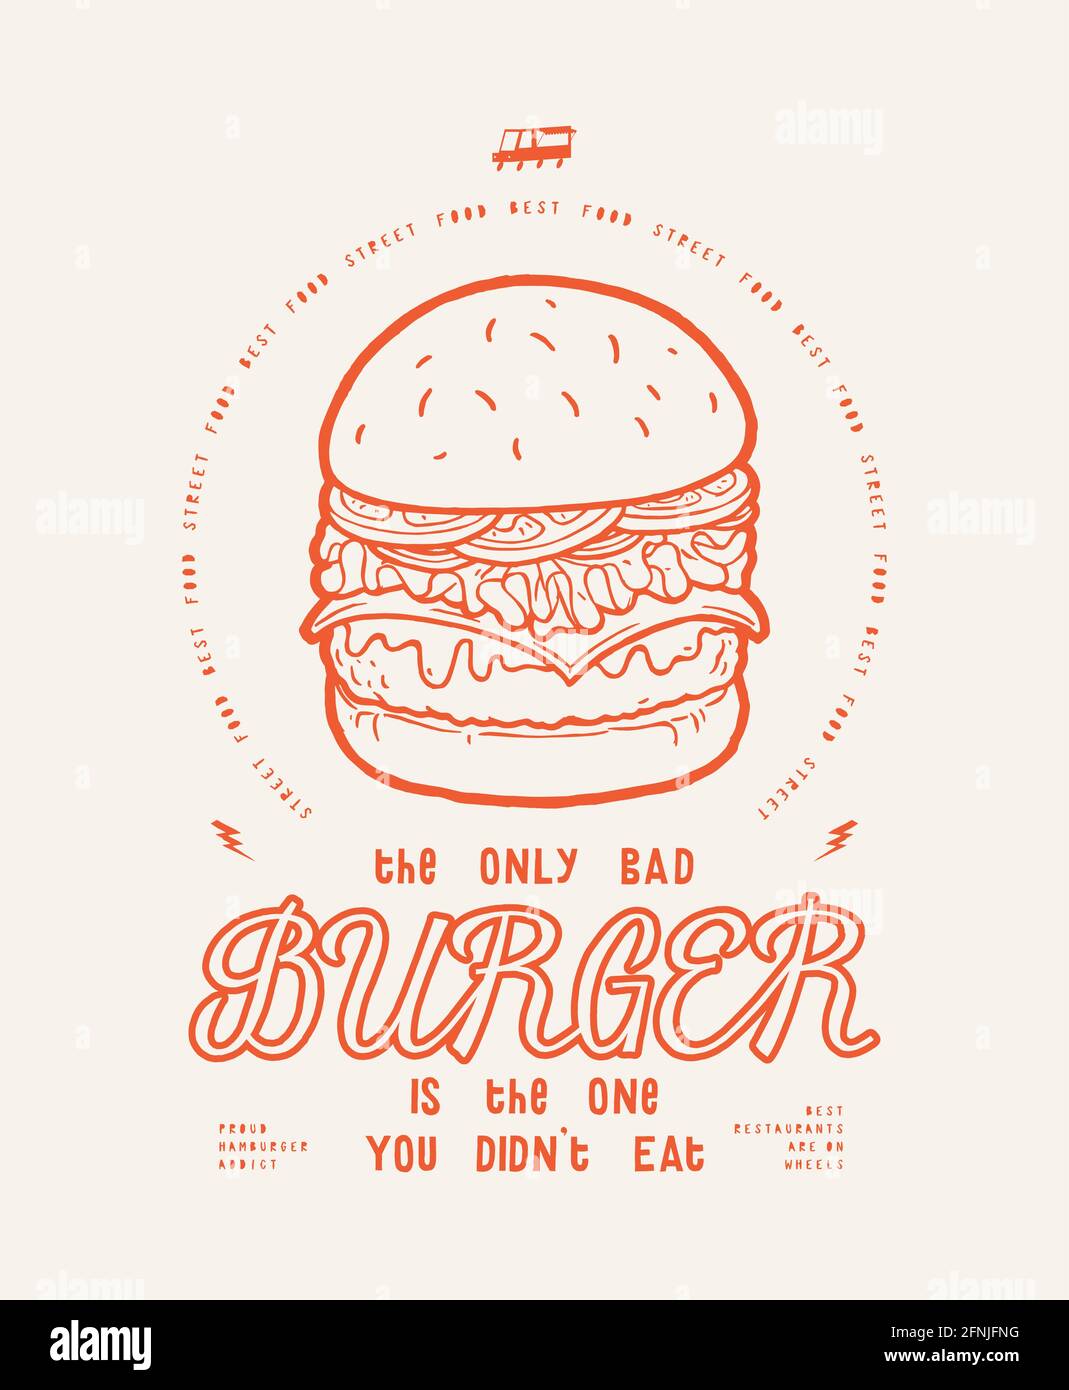 Le seul mauvais hamburger est celui que vous n'avez pas mangé. Food Truck American Street Food typographie moderne t-shirt imprimé illustration vectorielle. Illustration de Vecteur